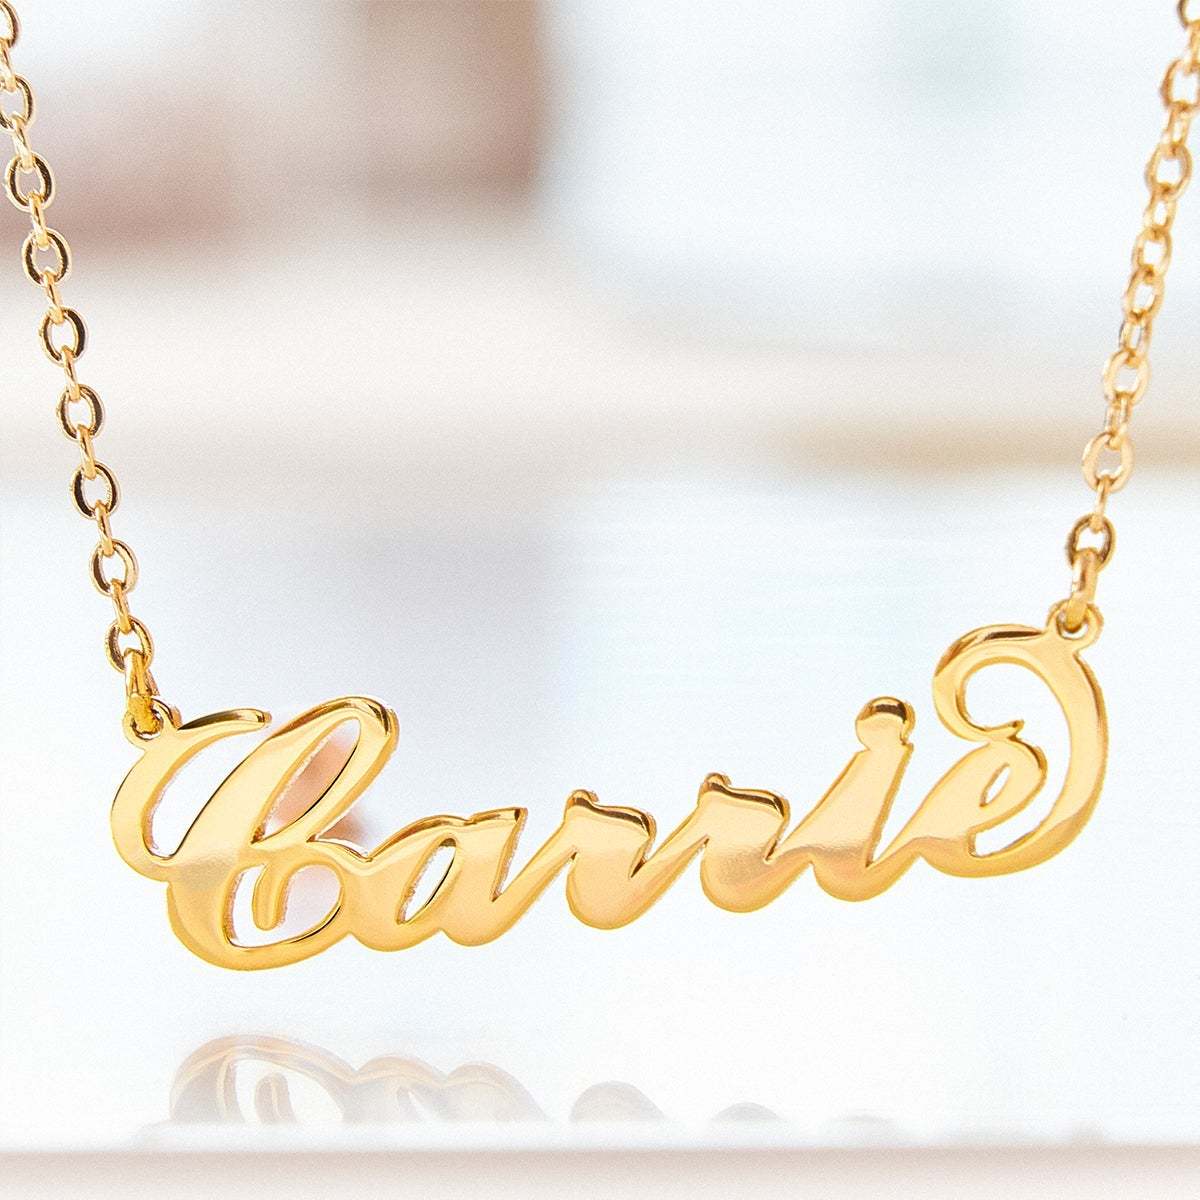 Collier Prenom Soufeel Gold "Carrie" Style Collier Prénom Cadeaux De Noël